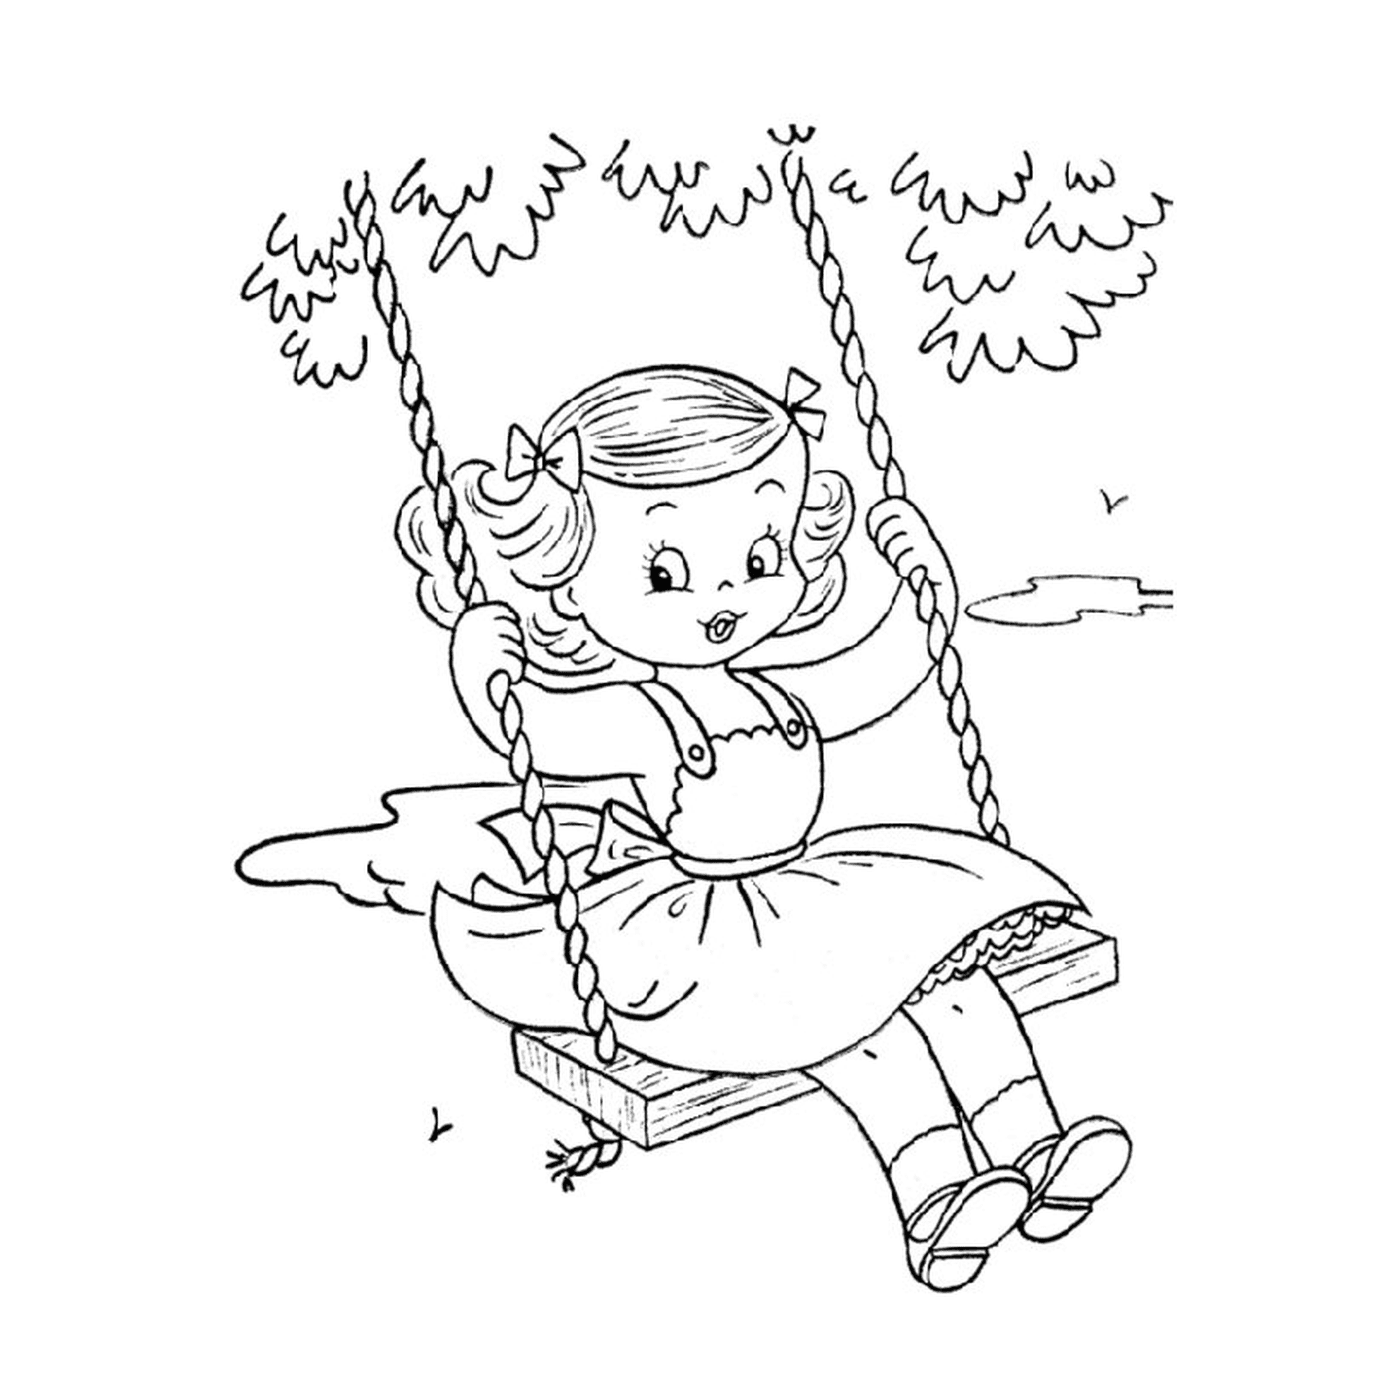  Una niña se balancea en un columpio 